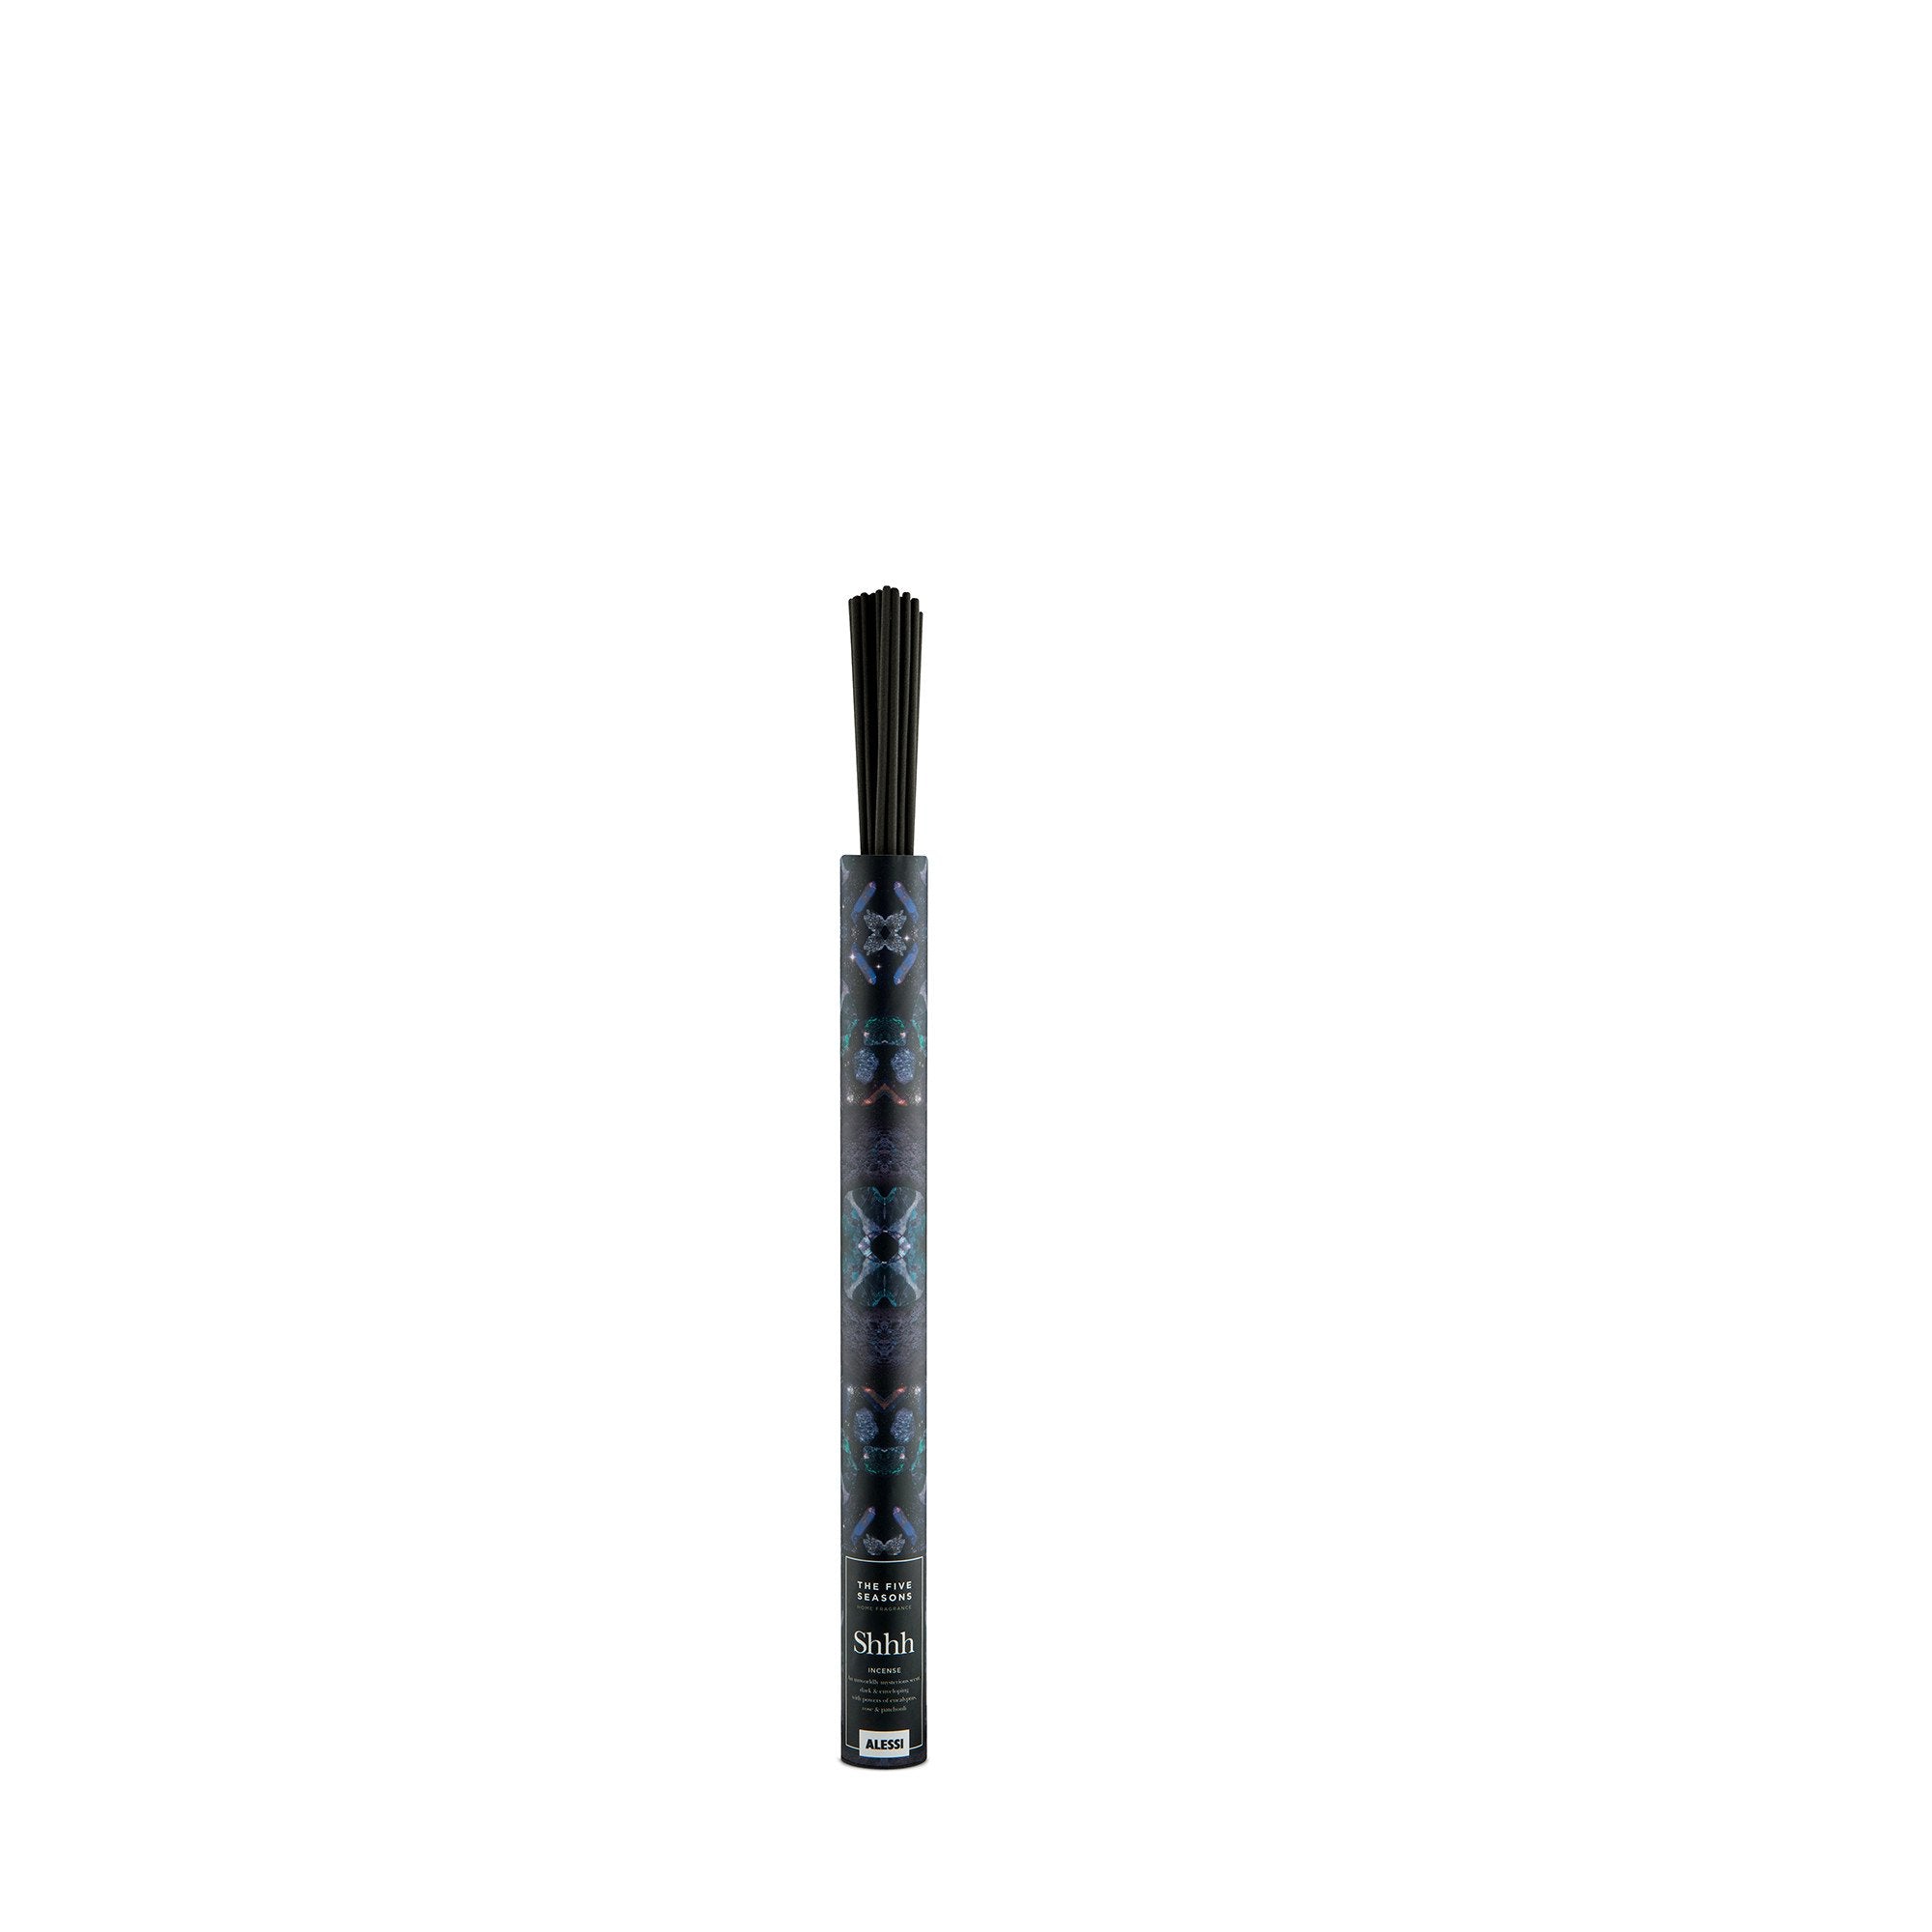 MW71 5 I Shhh  Incense